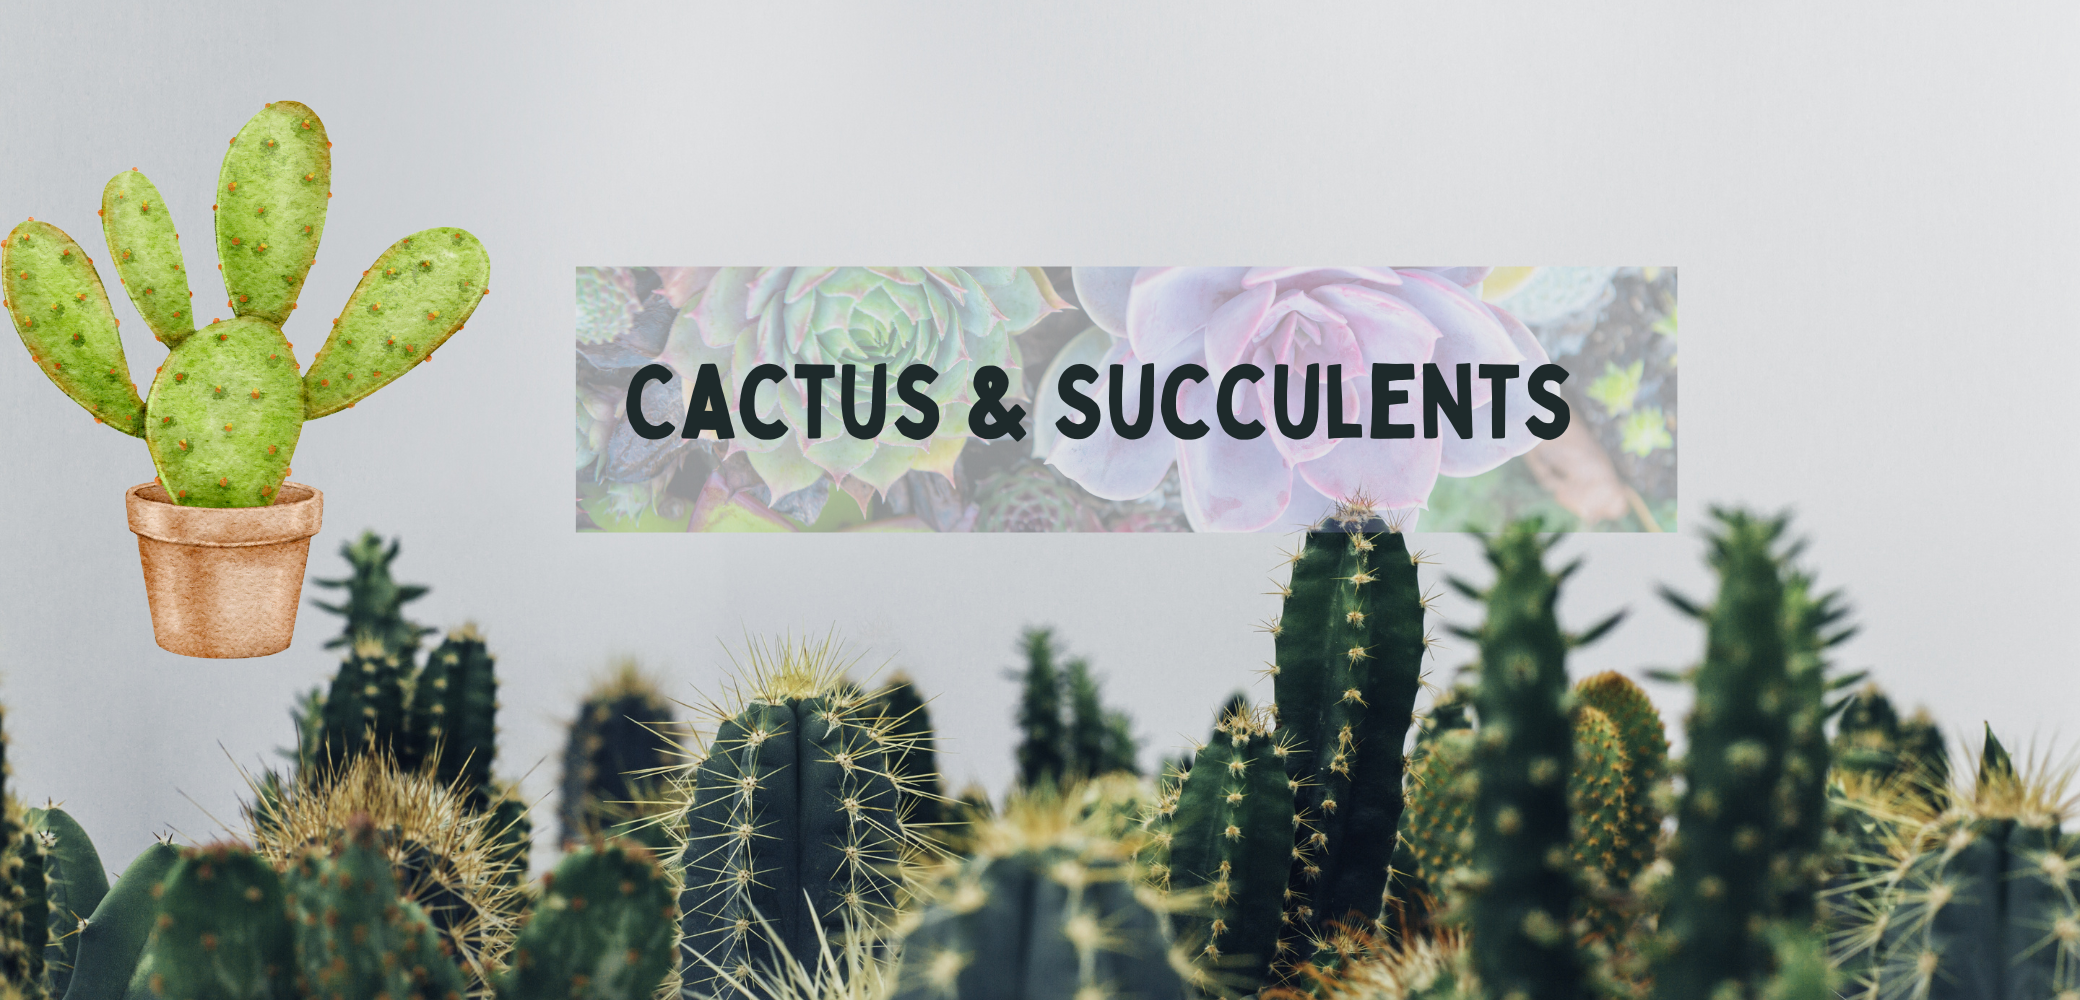 Cactus succulents plant page